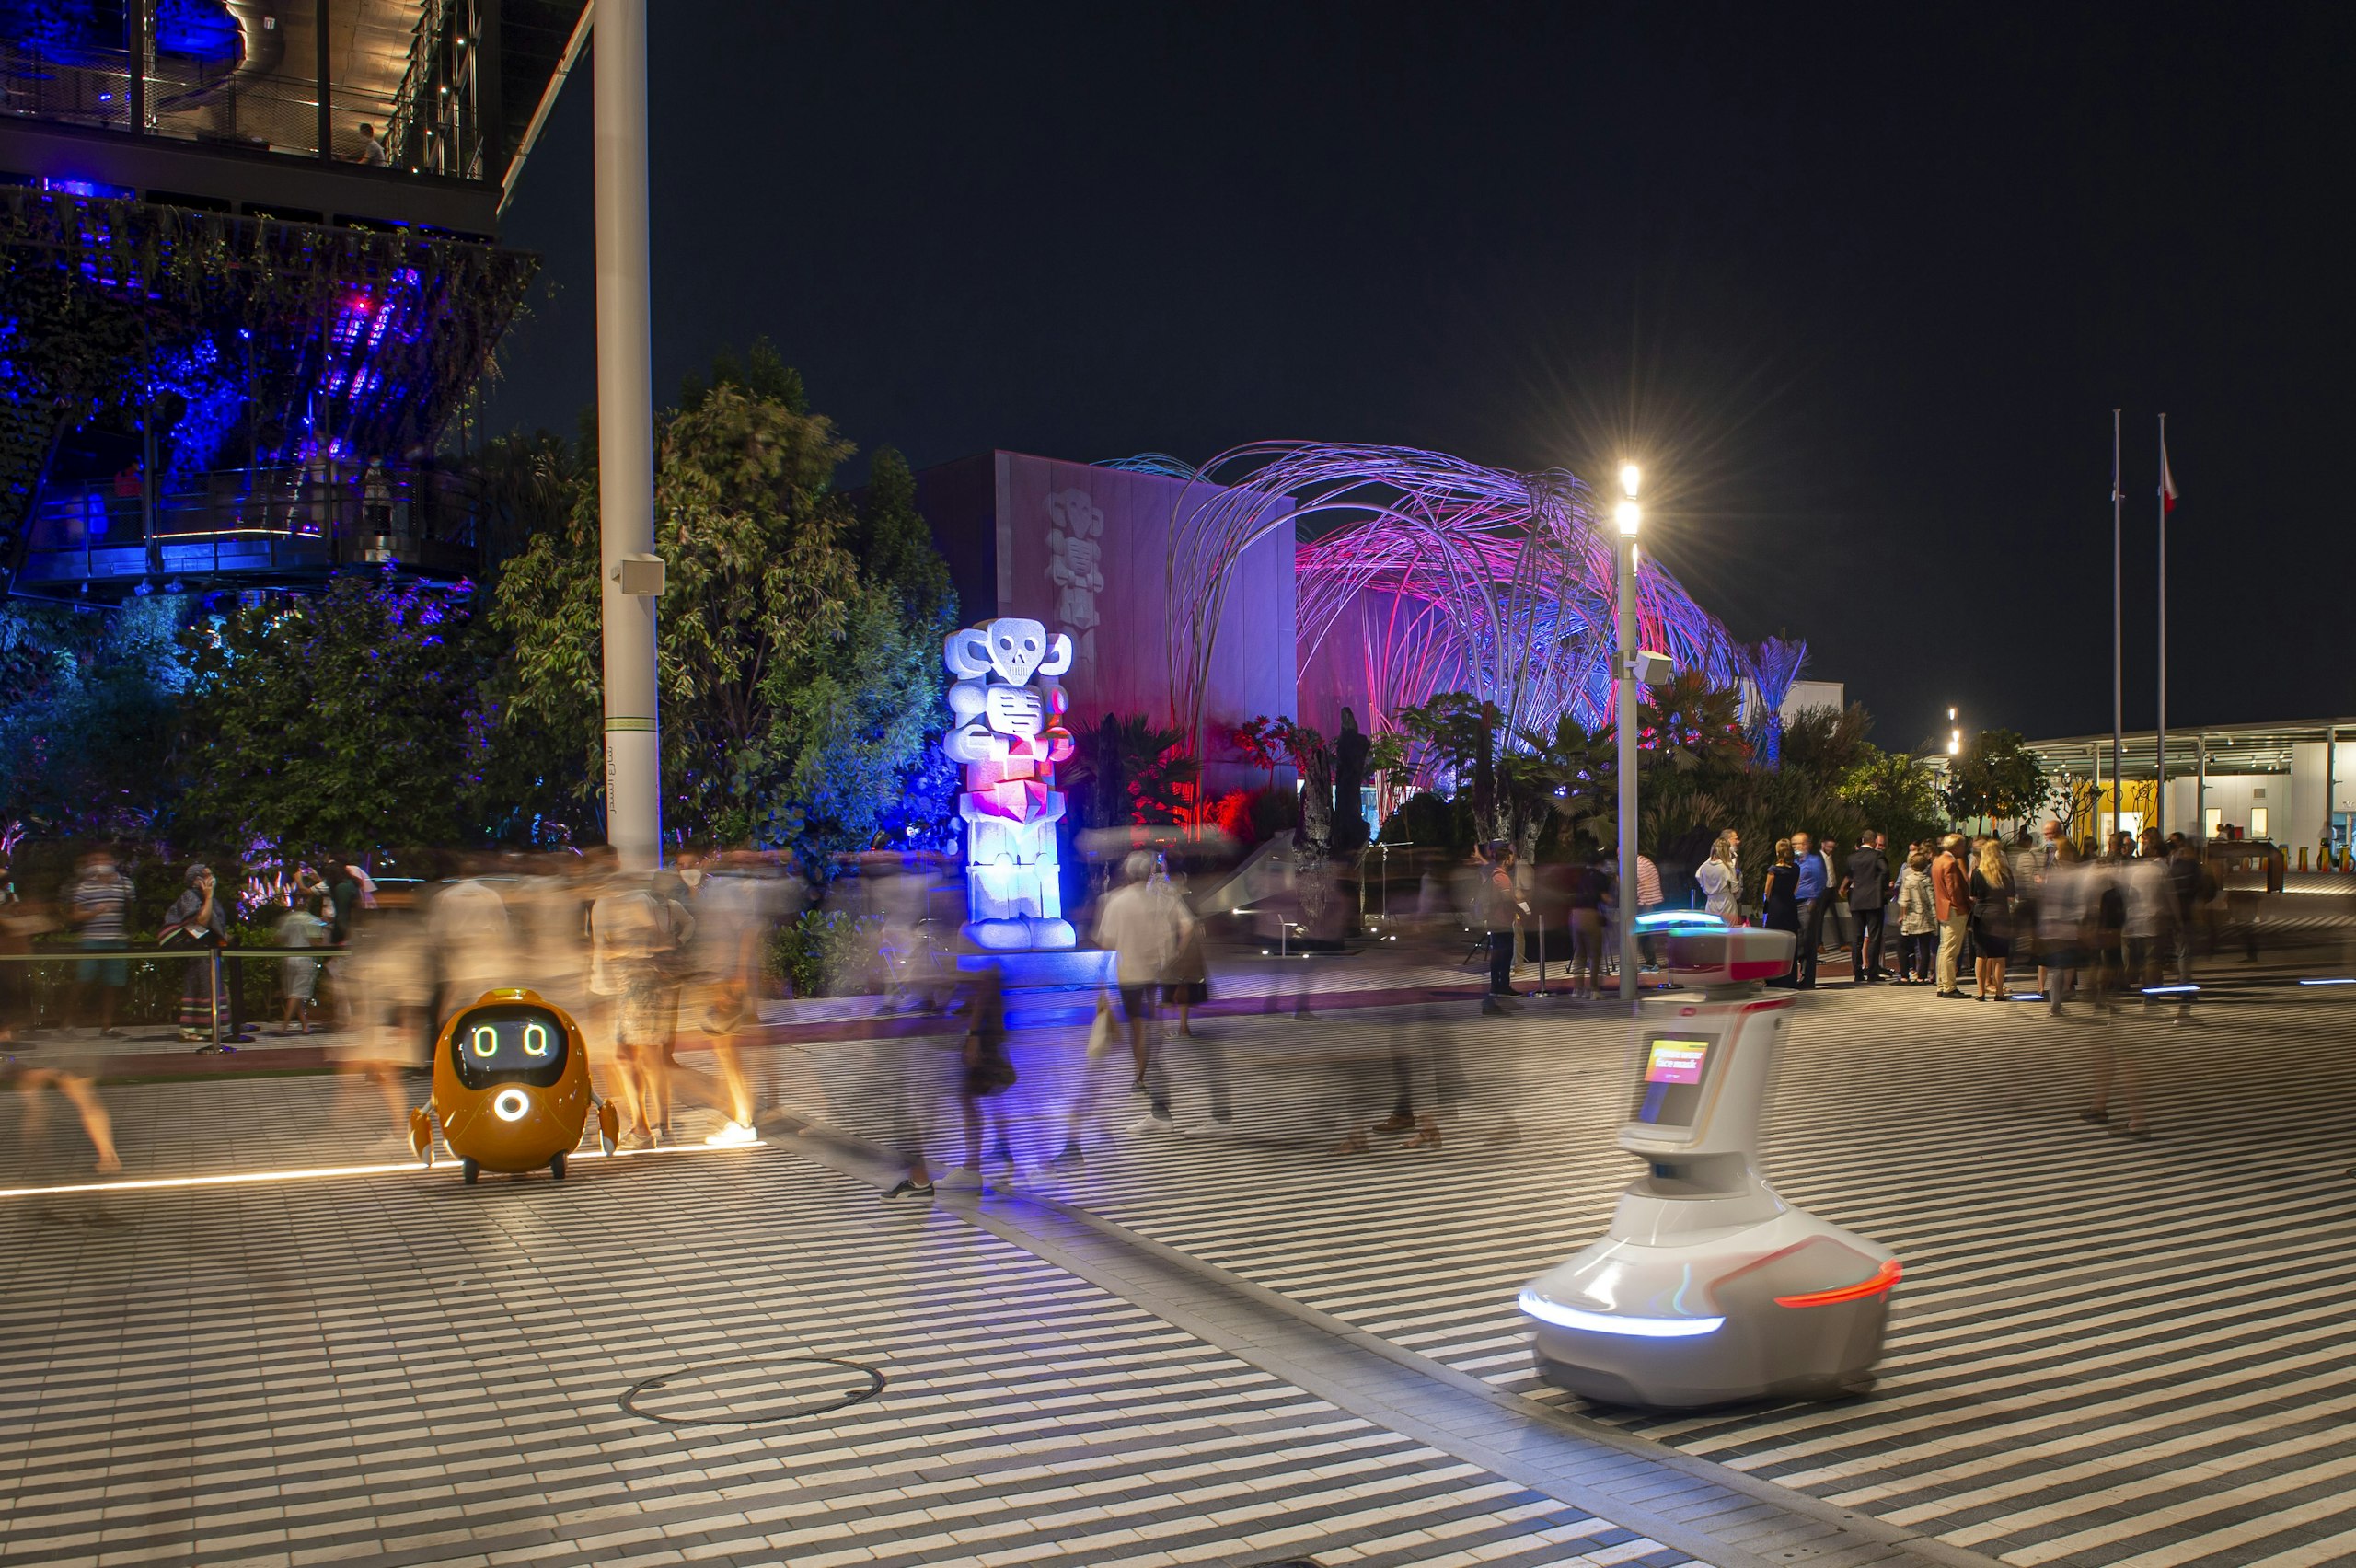 Socha Jaroslava Róny Victoria robotorum (Vítězství robotů) před českým pavilonem na světové výstavě Expo 2020 v Dubaji